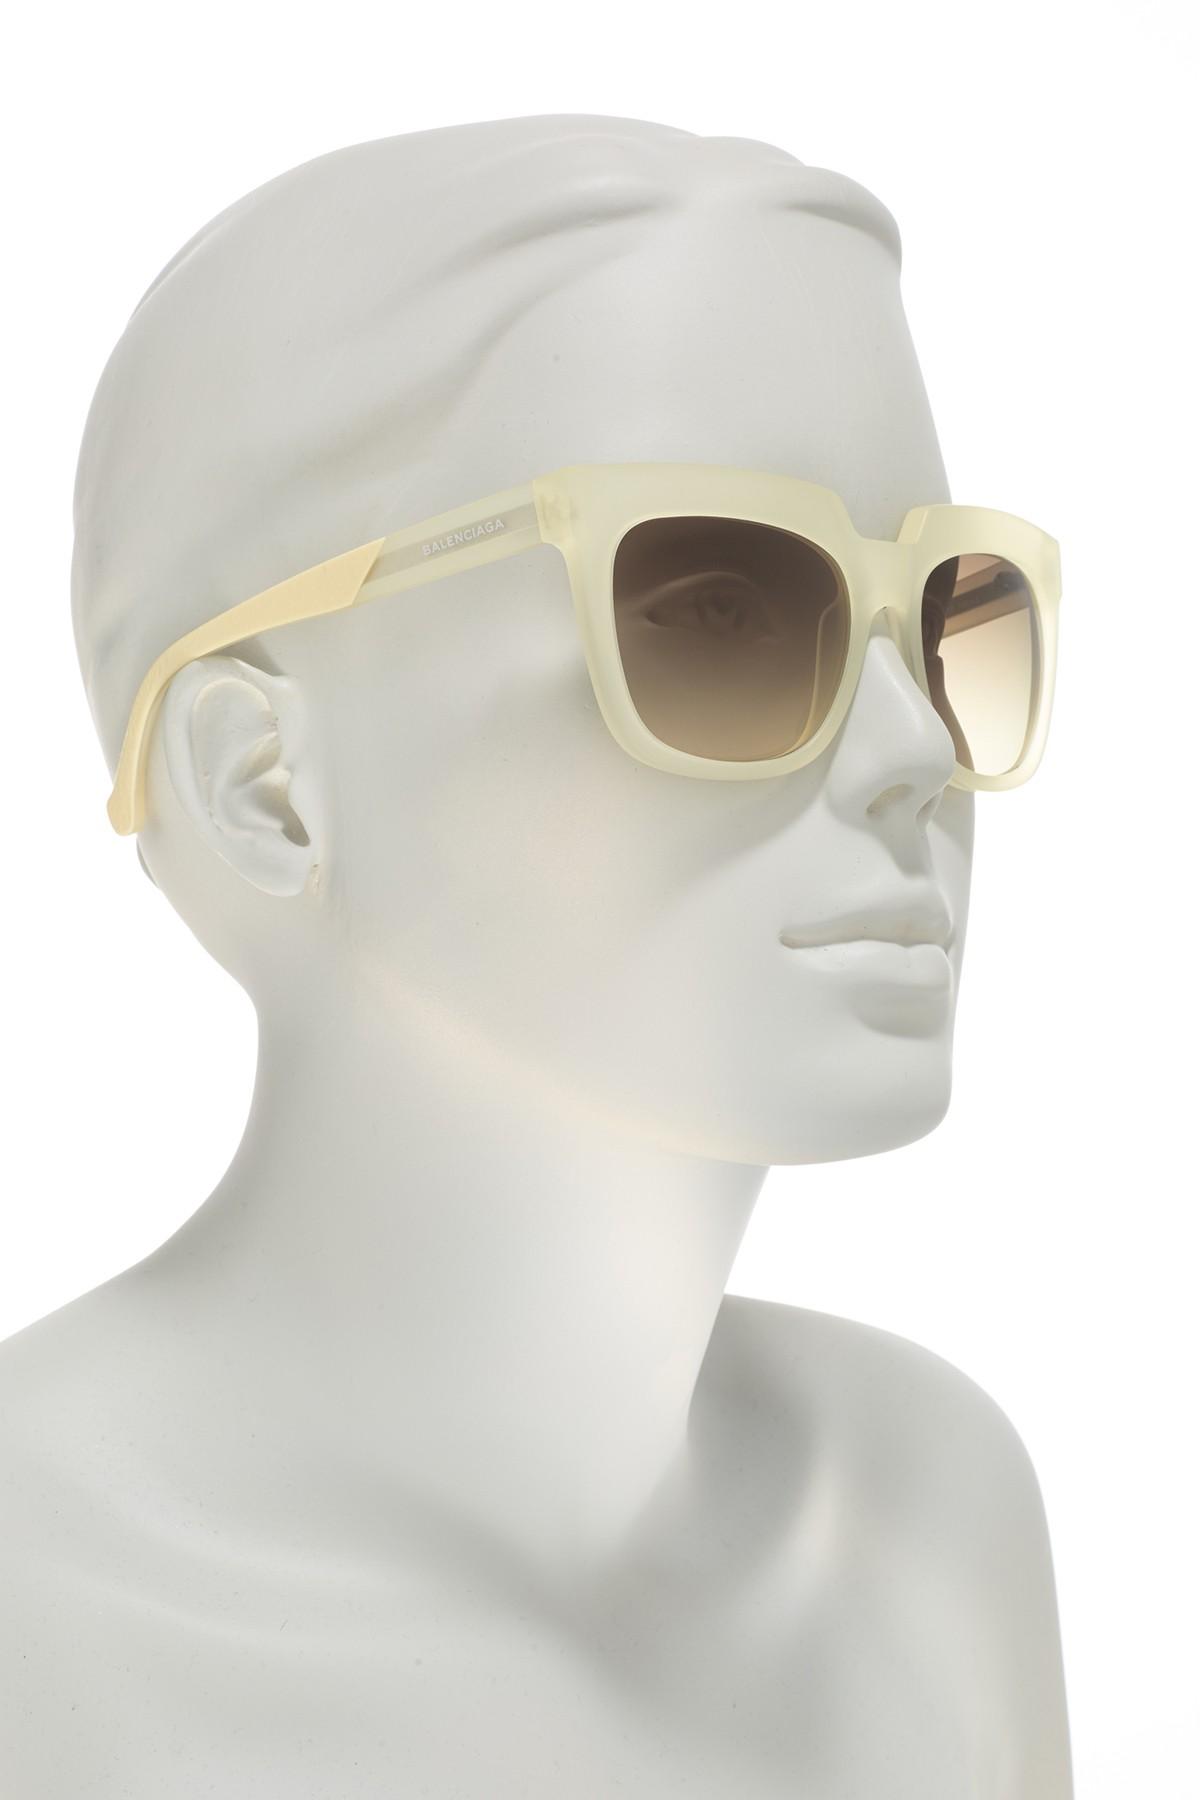 balenciaga square 55mm sunglasses